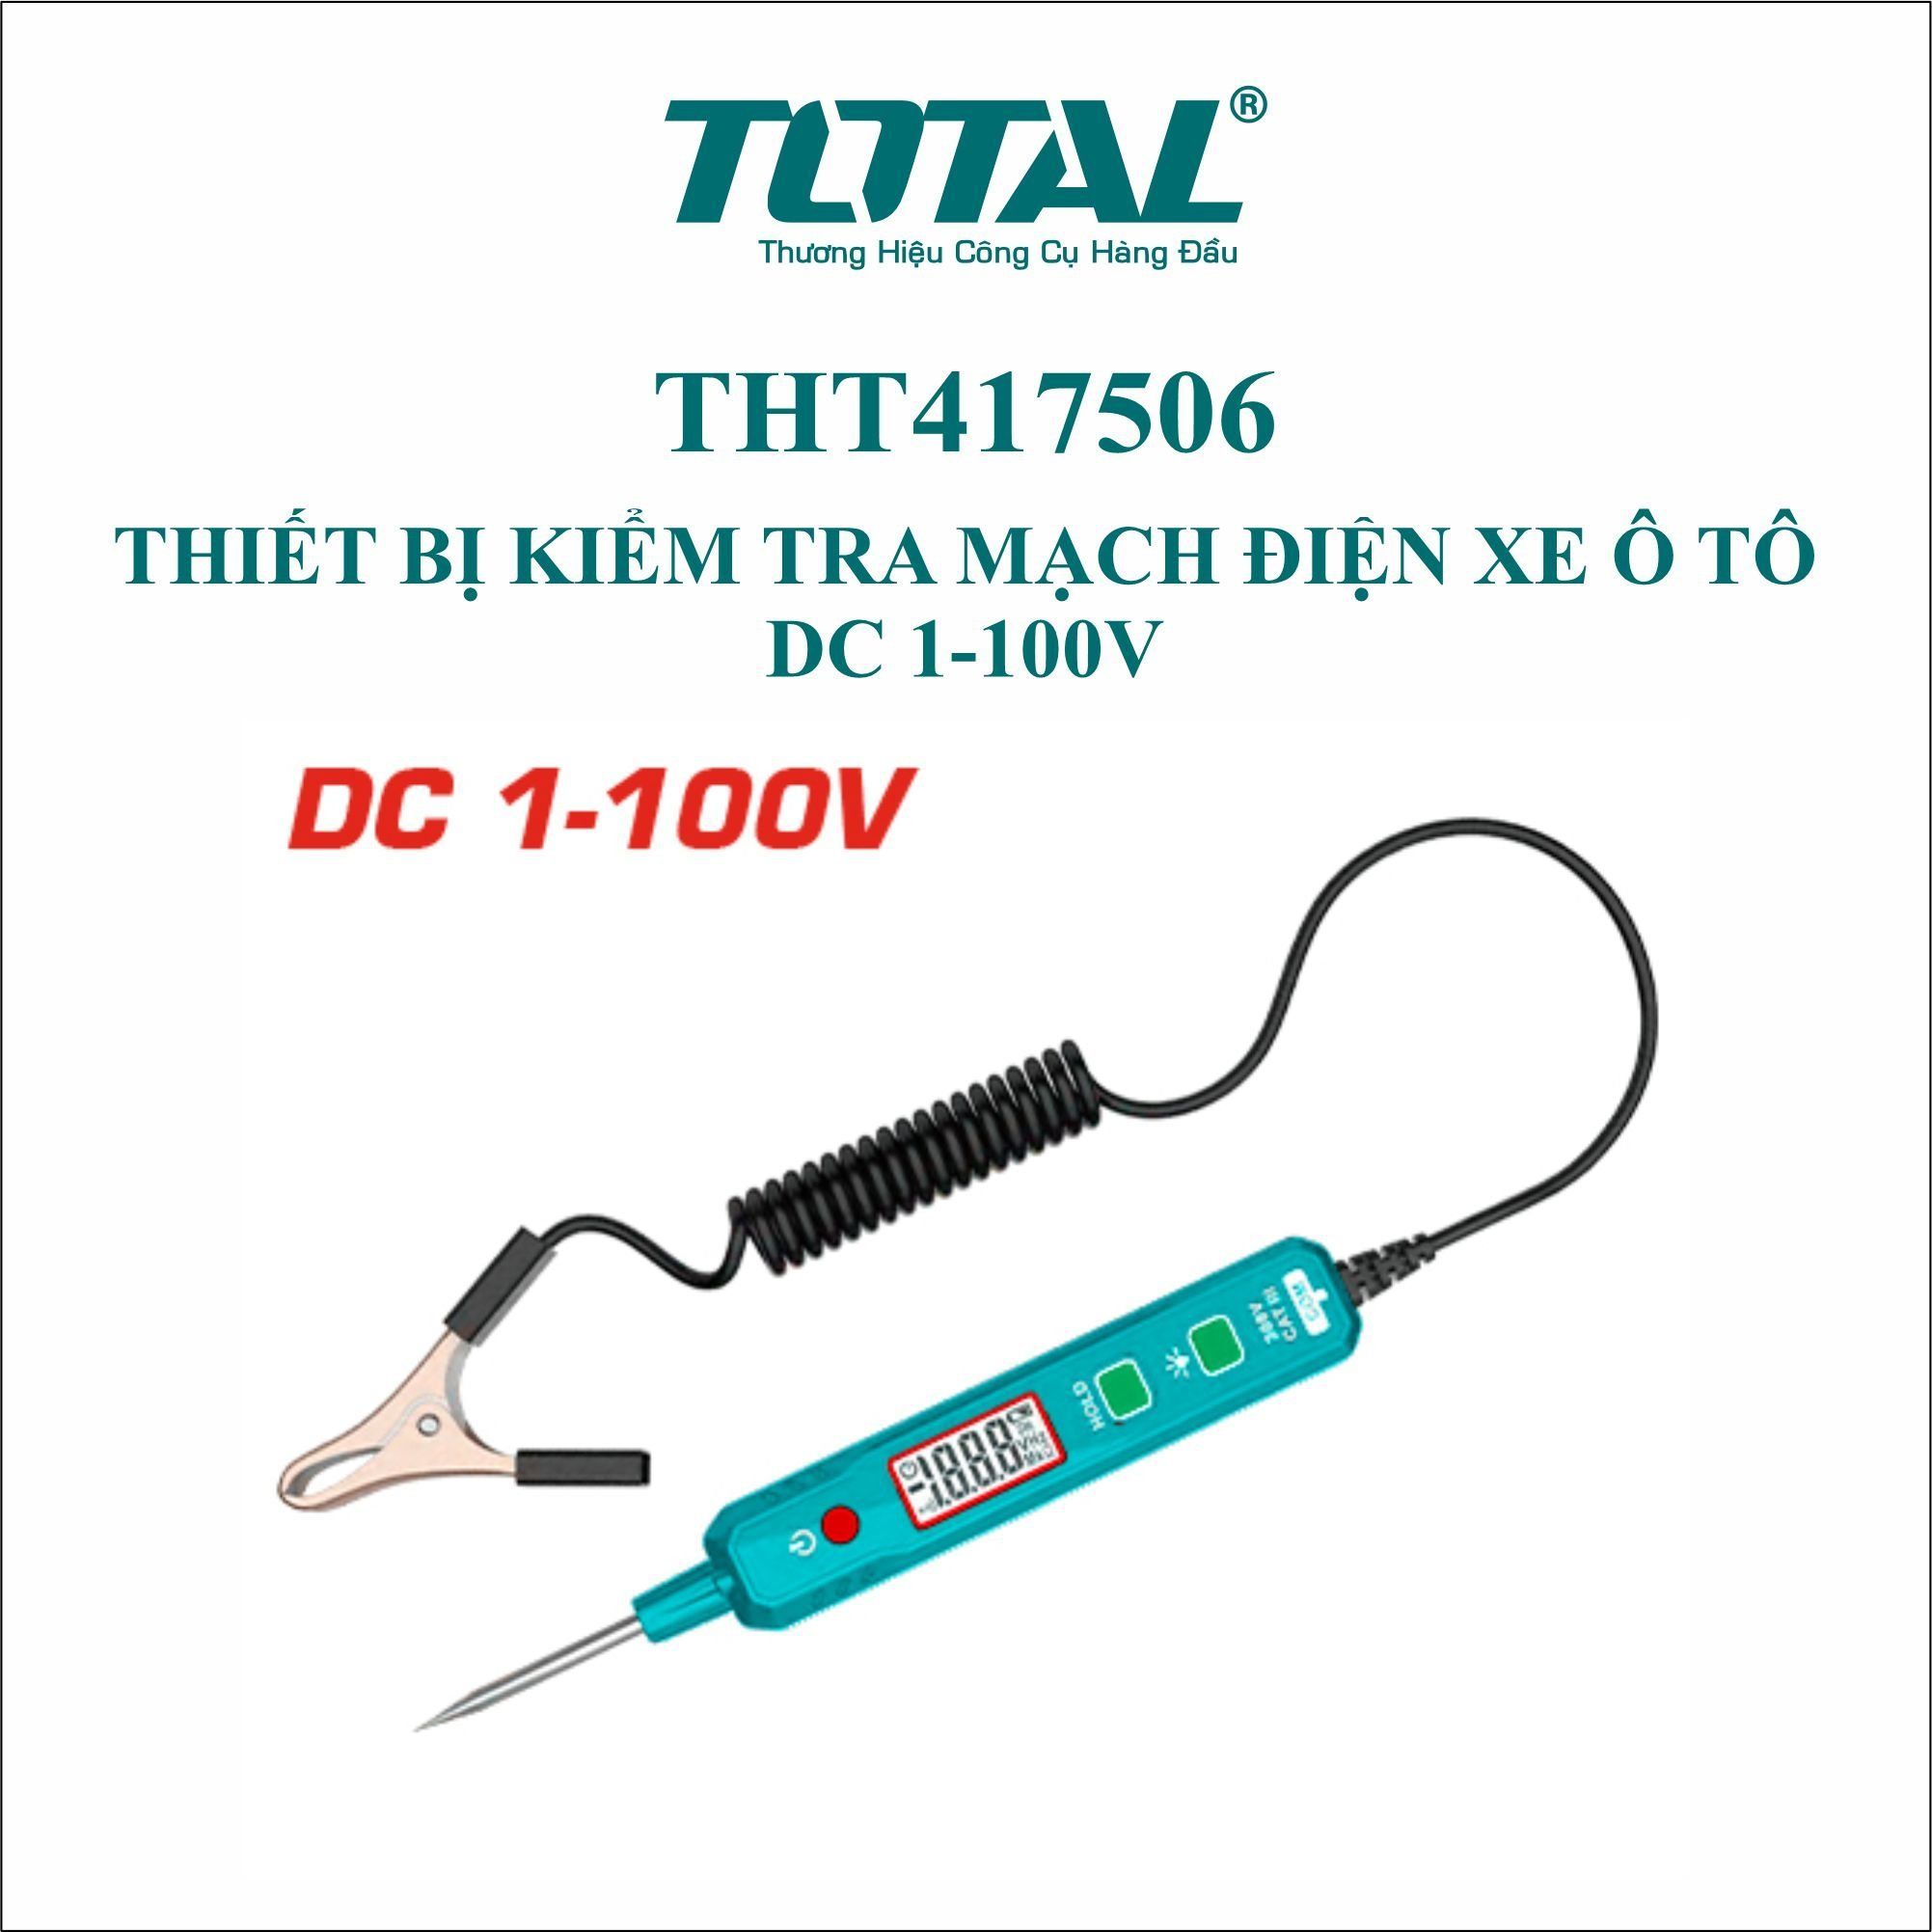  Thiết bị kiểm tra mạch điện xe ô tô  DC 1-100V Total THT417506 